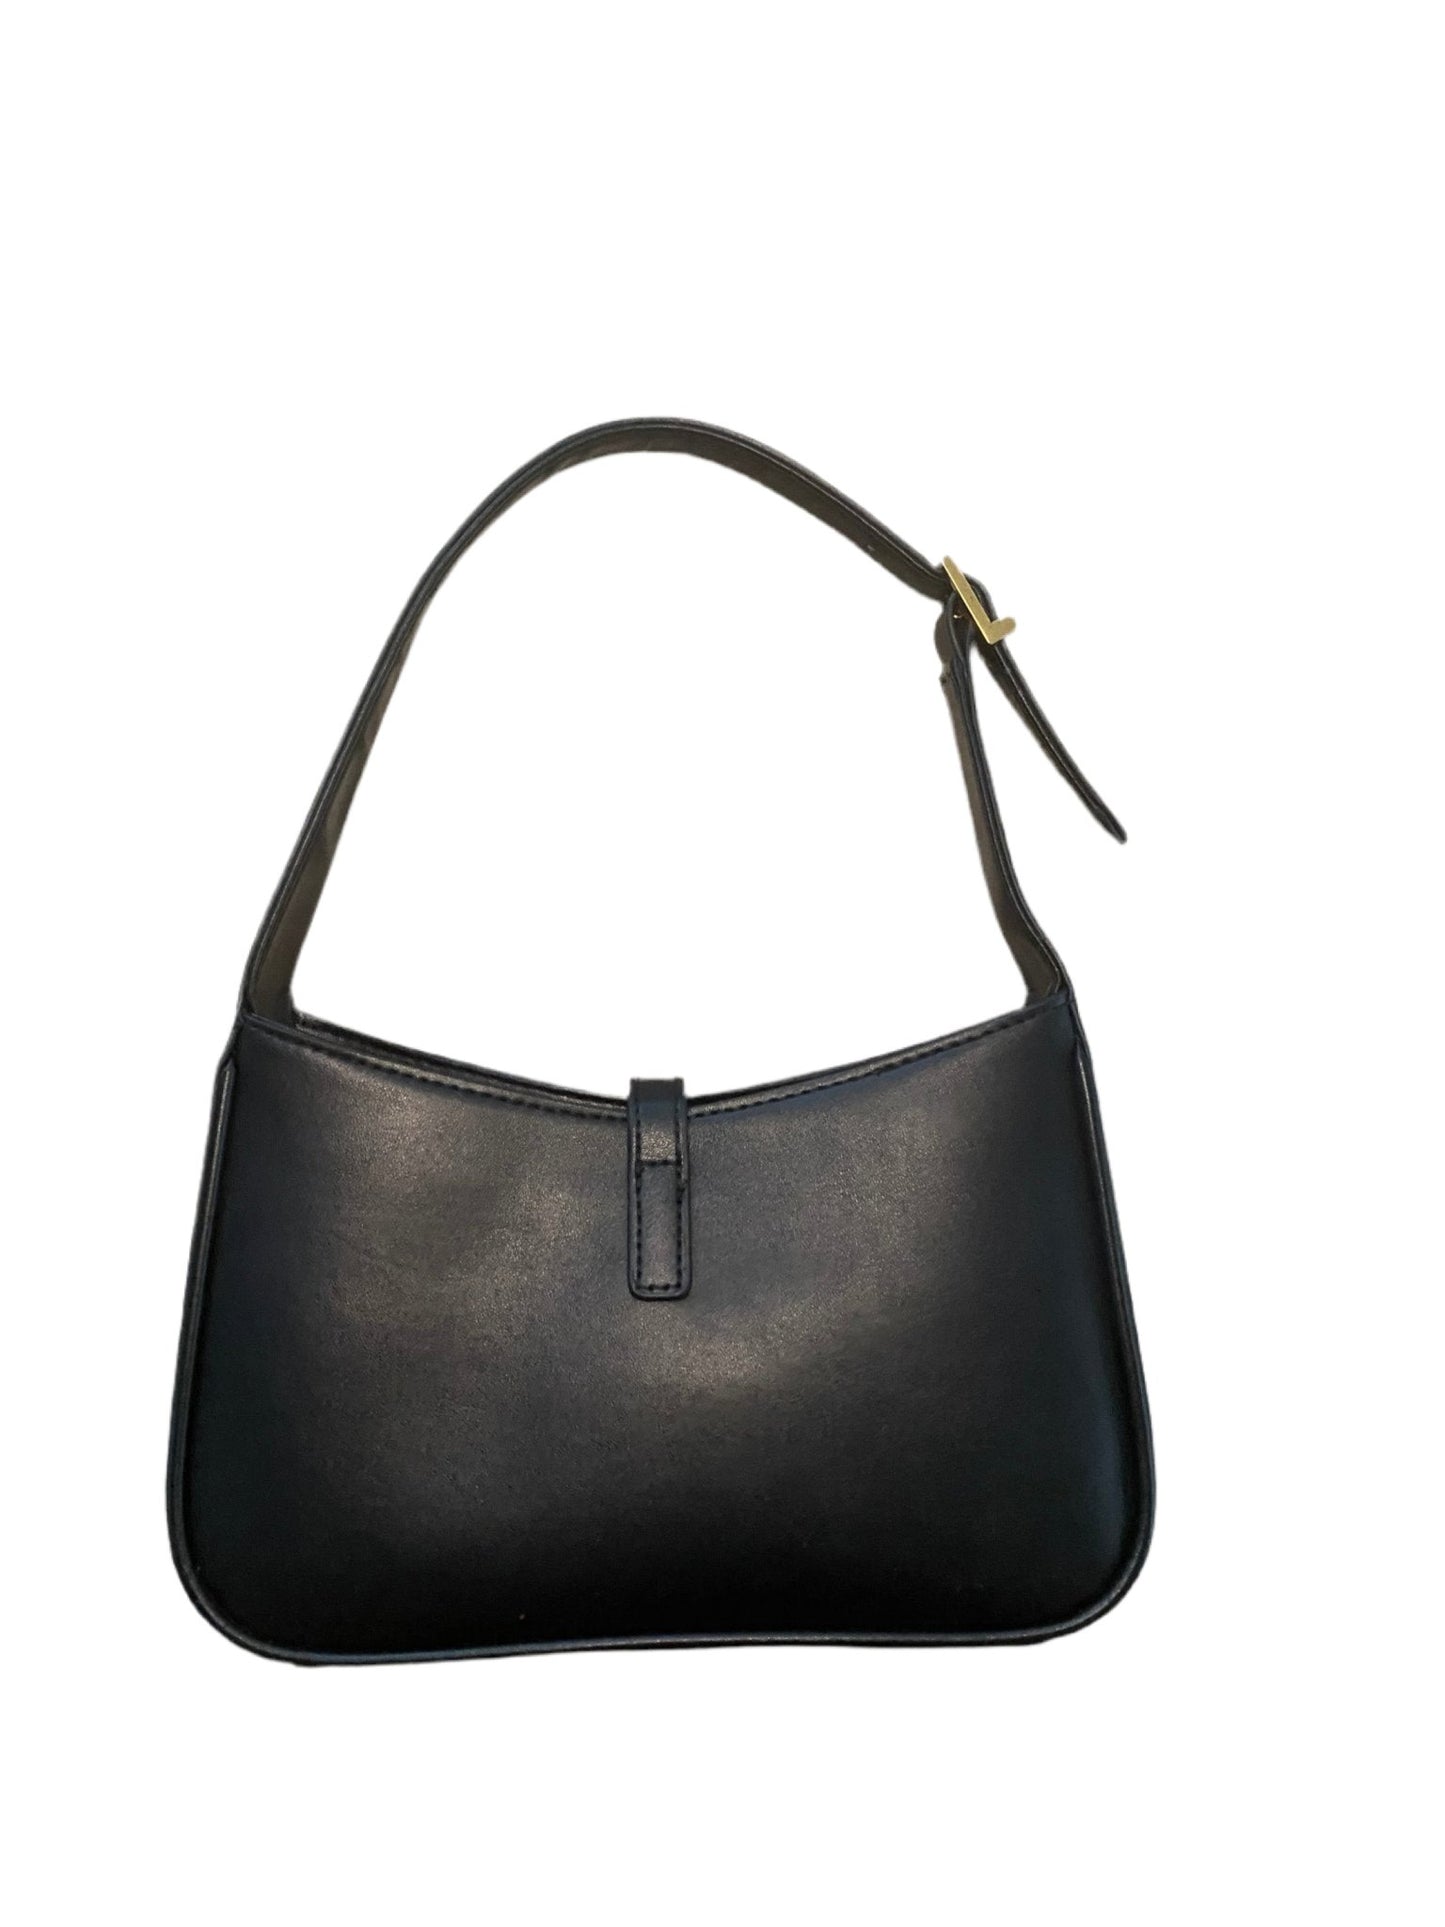 Classic Black Leather Shoulder Bag - Shoulder Bag - Street Couture Vintage Boutique